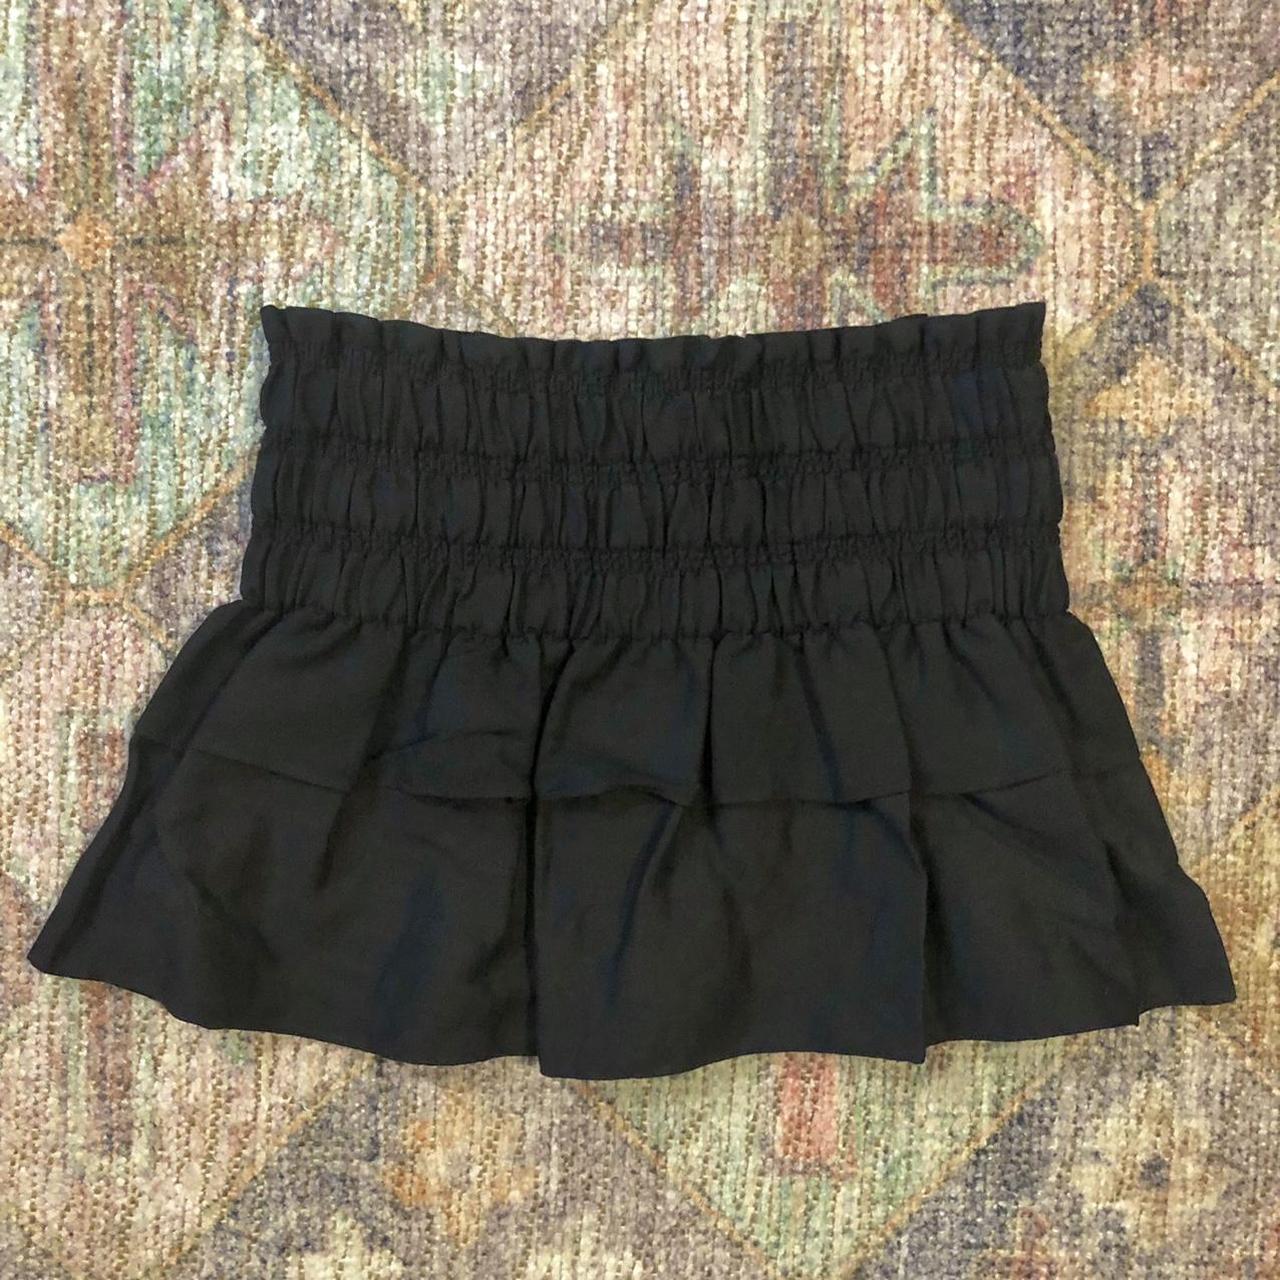 Isabel Marant Women's Black Skirt